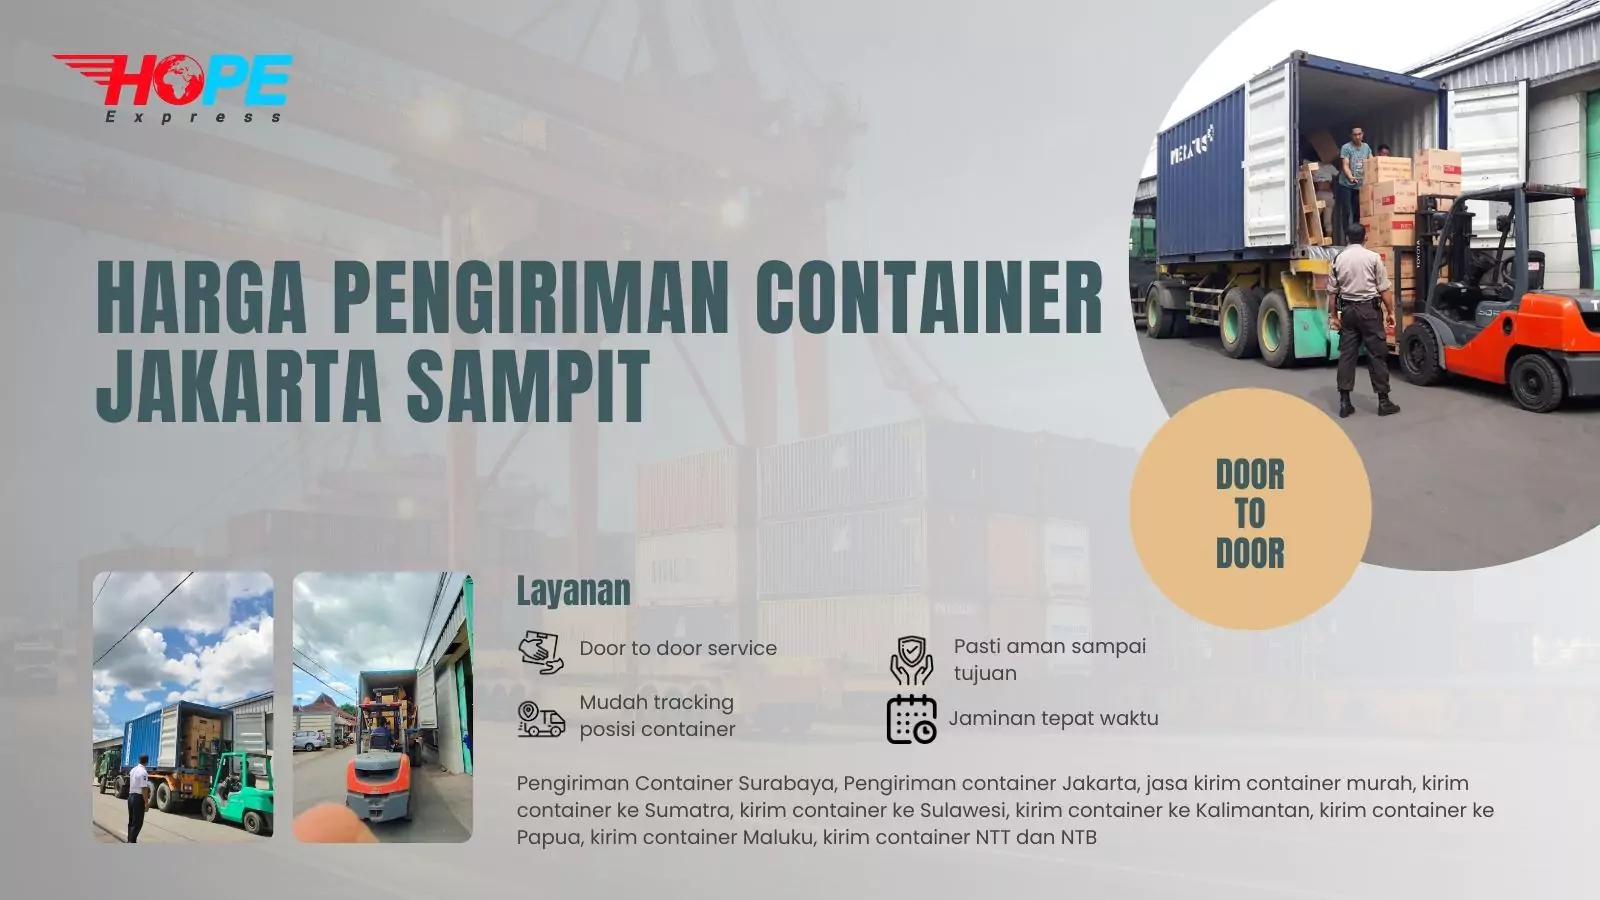 Harga Pengiriman Container Jakarta Sampit